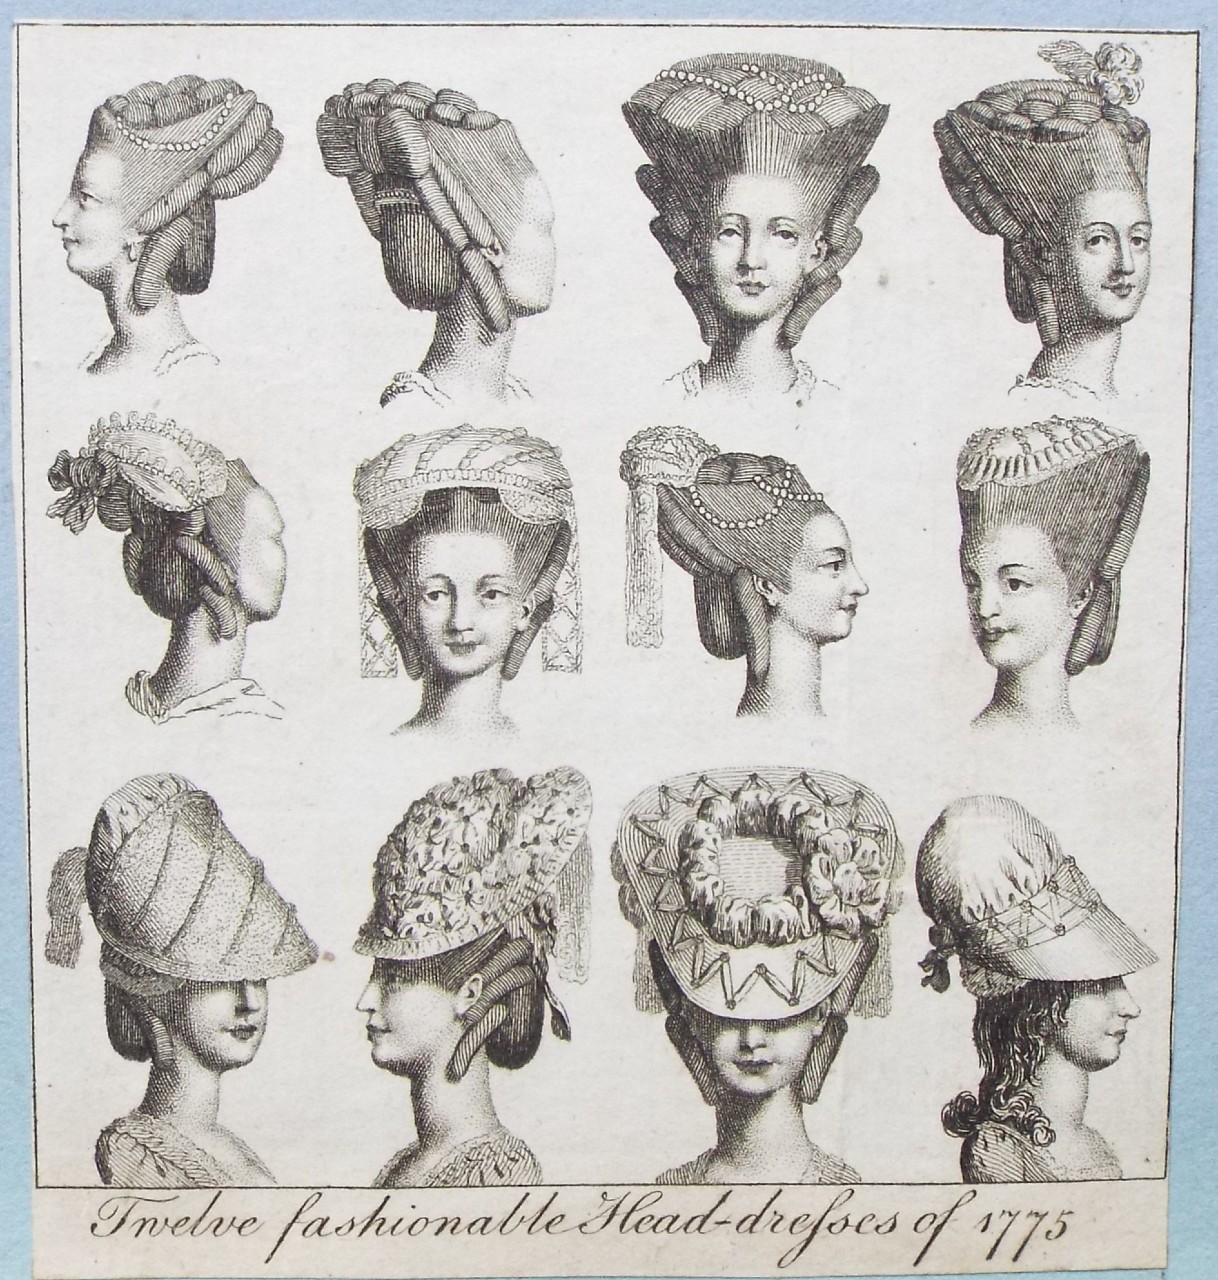 Print - Twelve fashionable Head-dresses of 1775